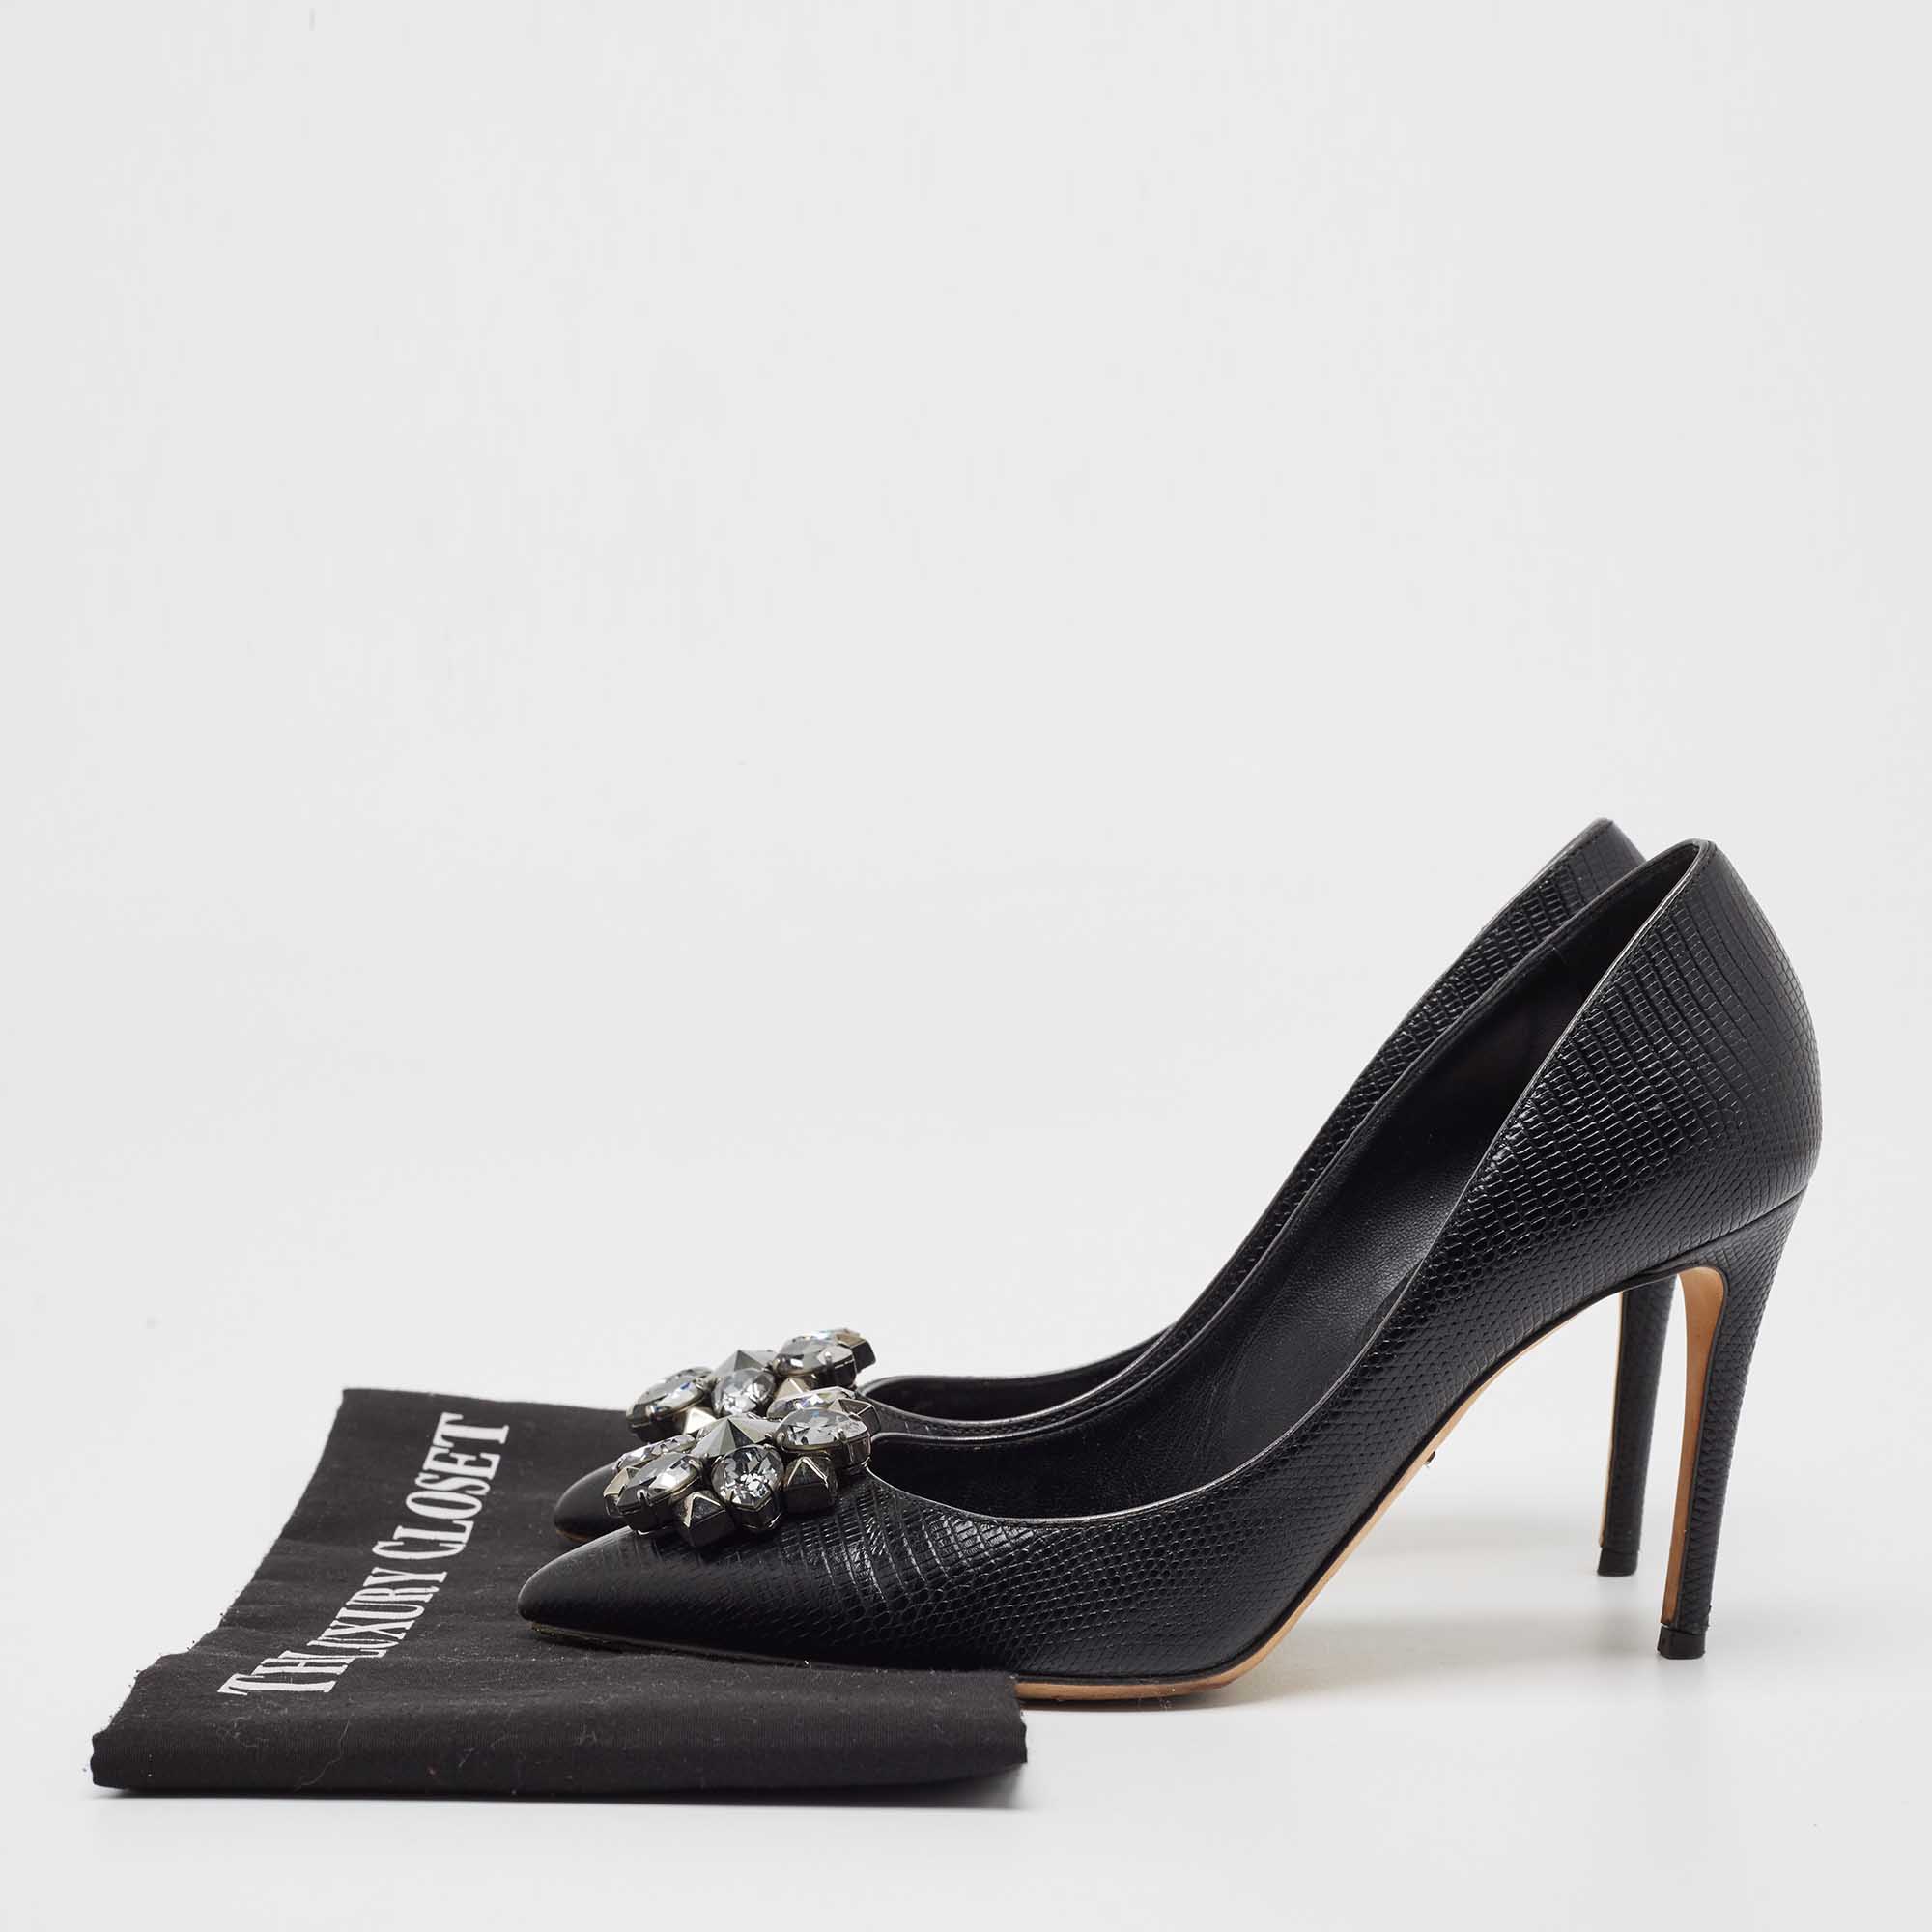 Dolce & Gabbana Black Lizard Leather Bellucci Pumps Size 38